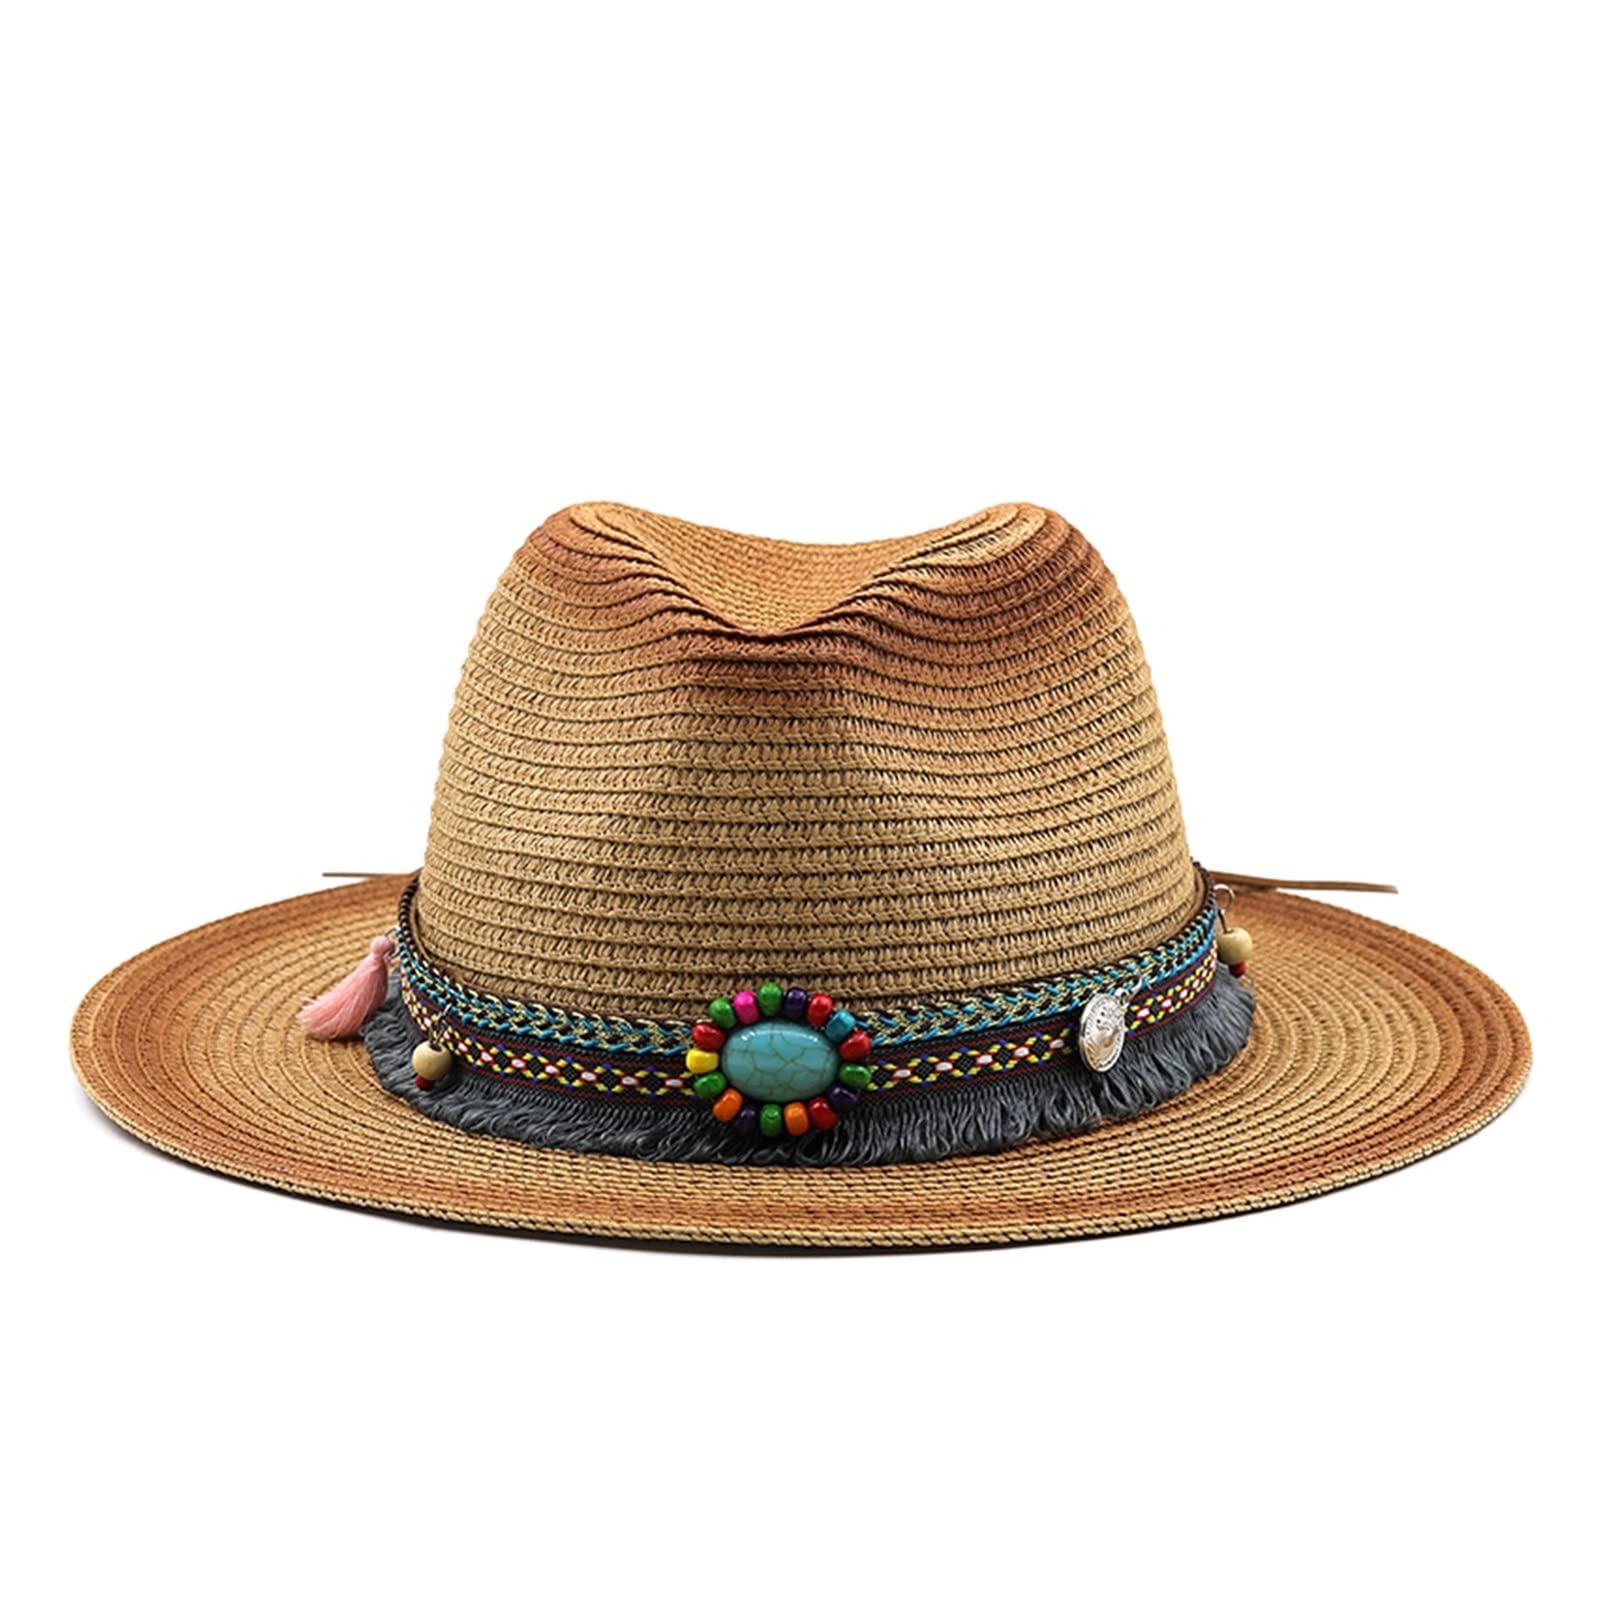 送料無料ZouGAOYuAn Simple Vintage Panama Hat Men Straw Fedora Male Sun hat Women Summer Beach British Style Chapeau Cap S